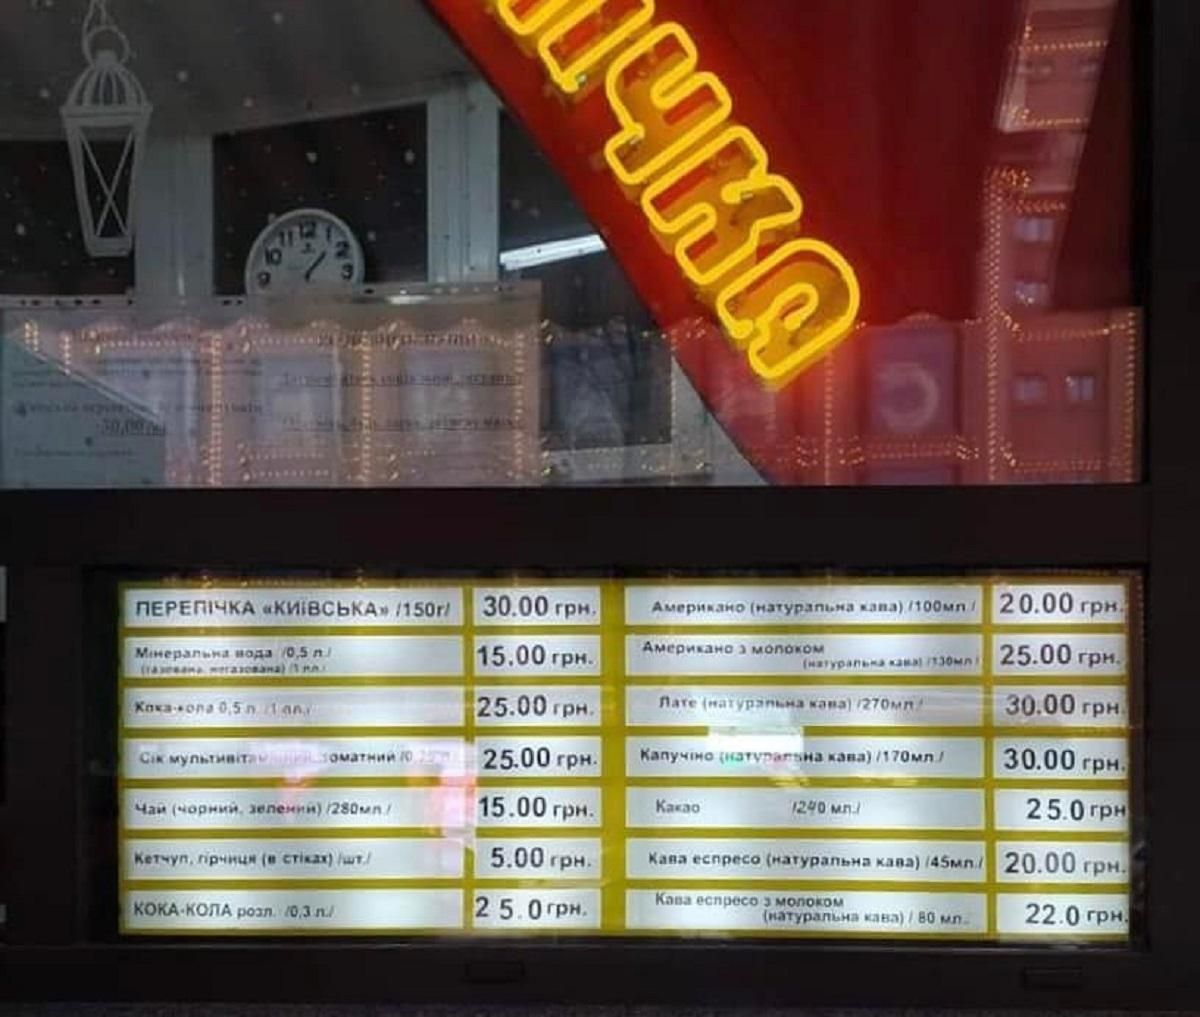 Гастролегенда бьет рекорды: стоимость киевской перепички сравнялась с ценой бургера McDonald's